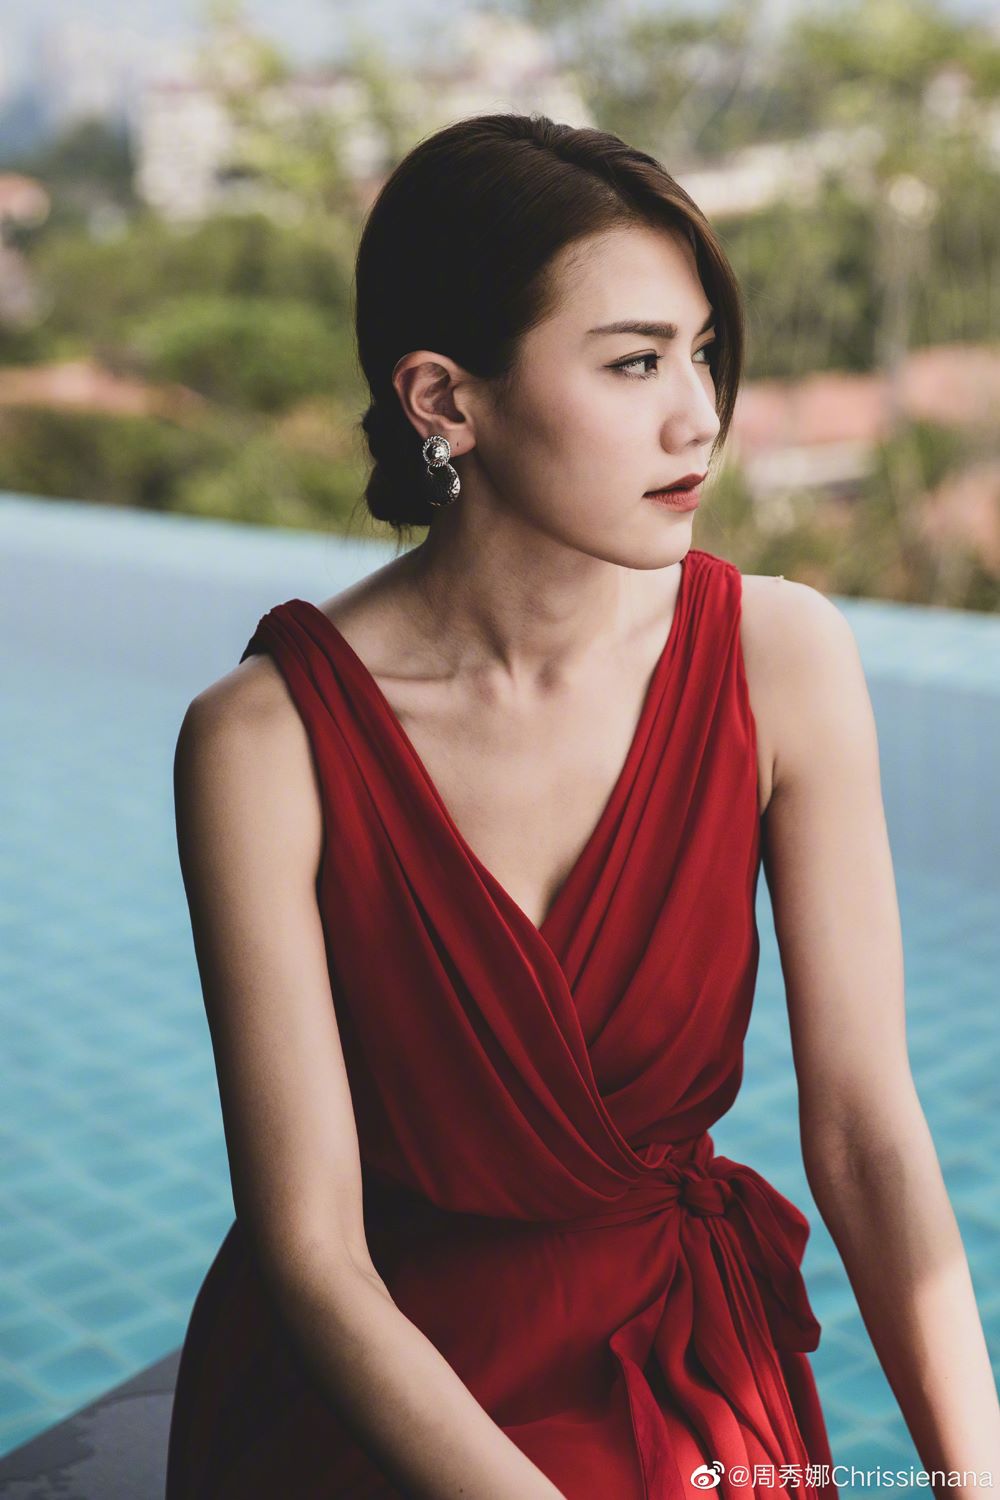 Body hiện tại của "nữ hoàng nội y Hong Kong" khiến fan bất ngờ - 4